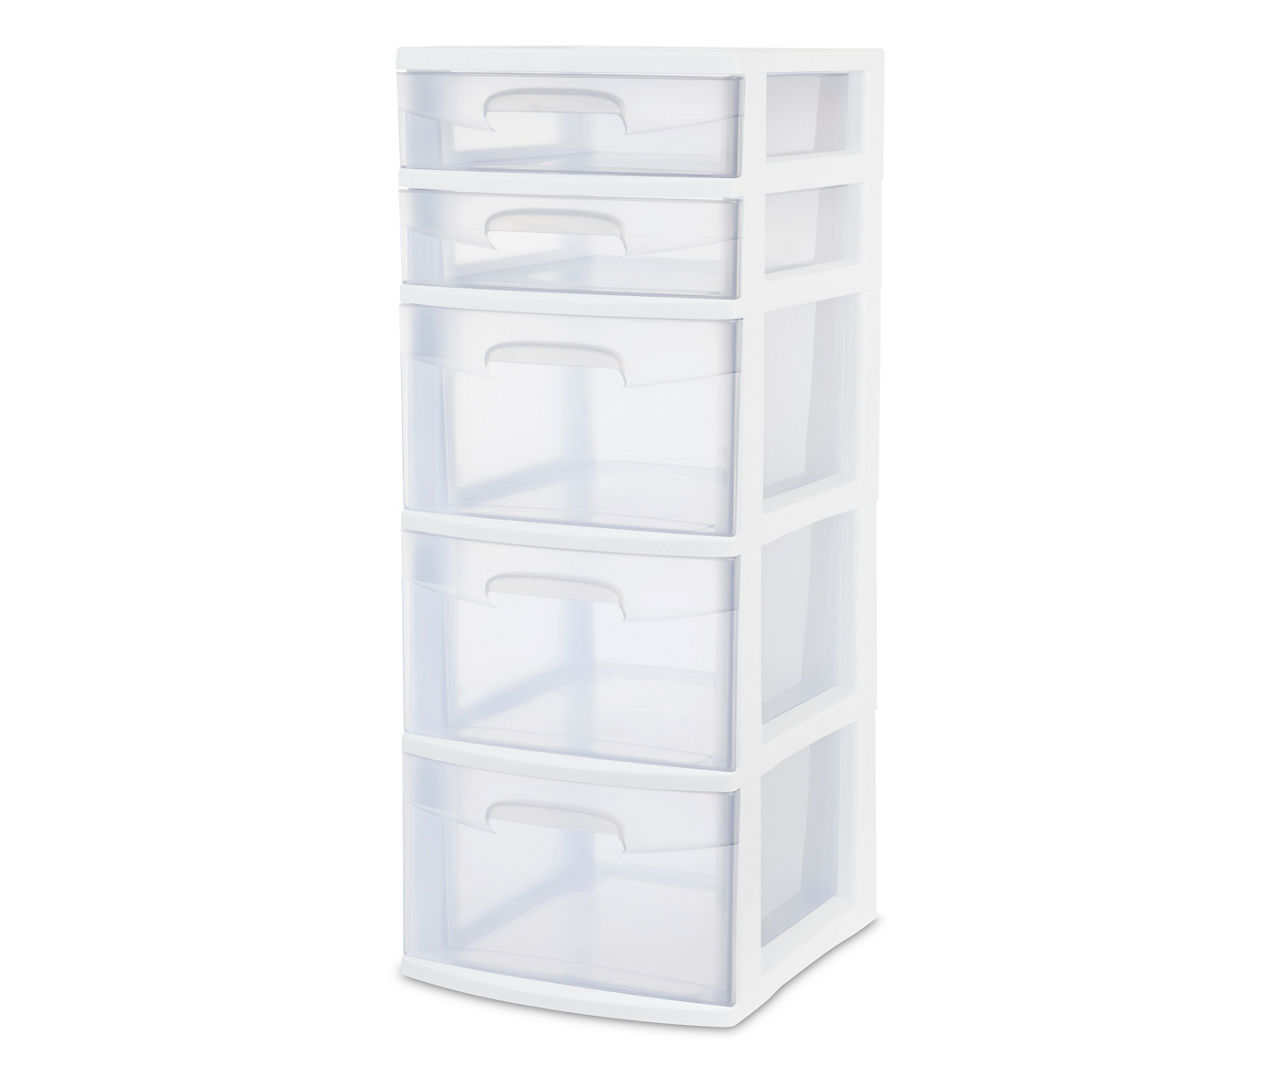 Ktaxon Plastic Storage Bins Organizer with 5 Drawers, Durable Plastic Drawers Organizer, Size: 5-tier, White